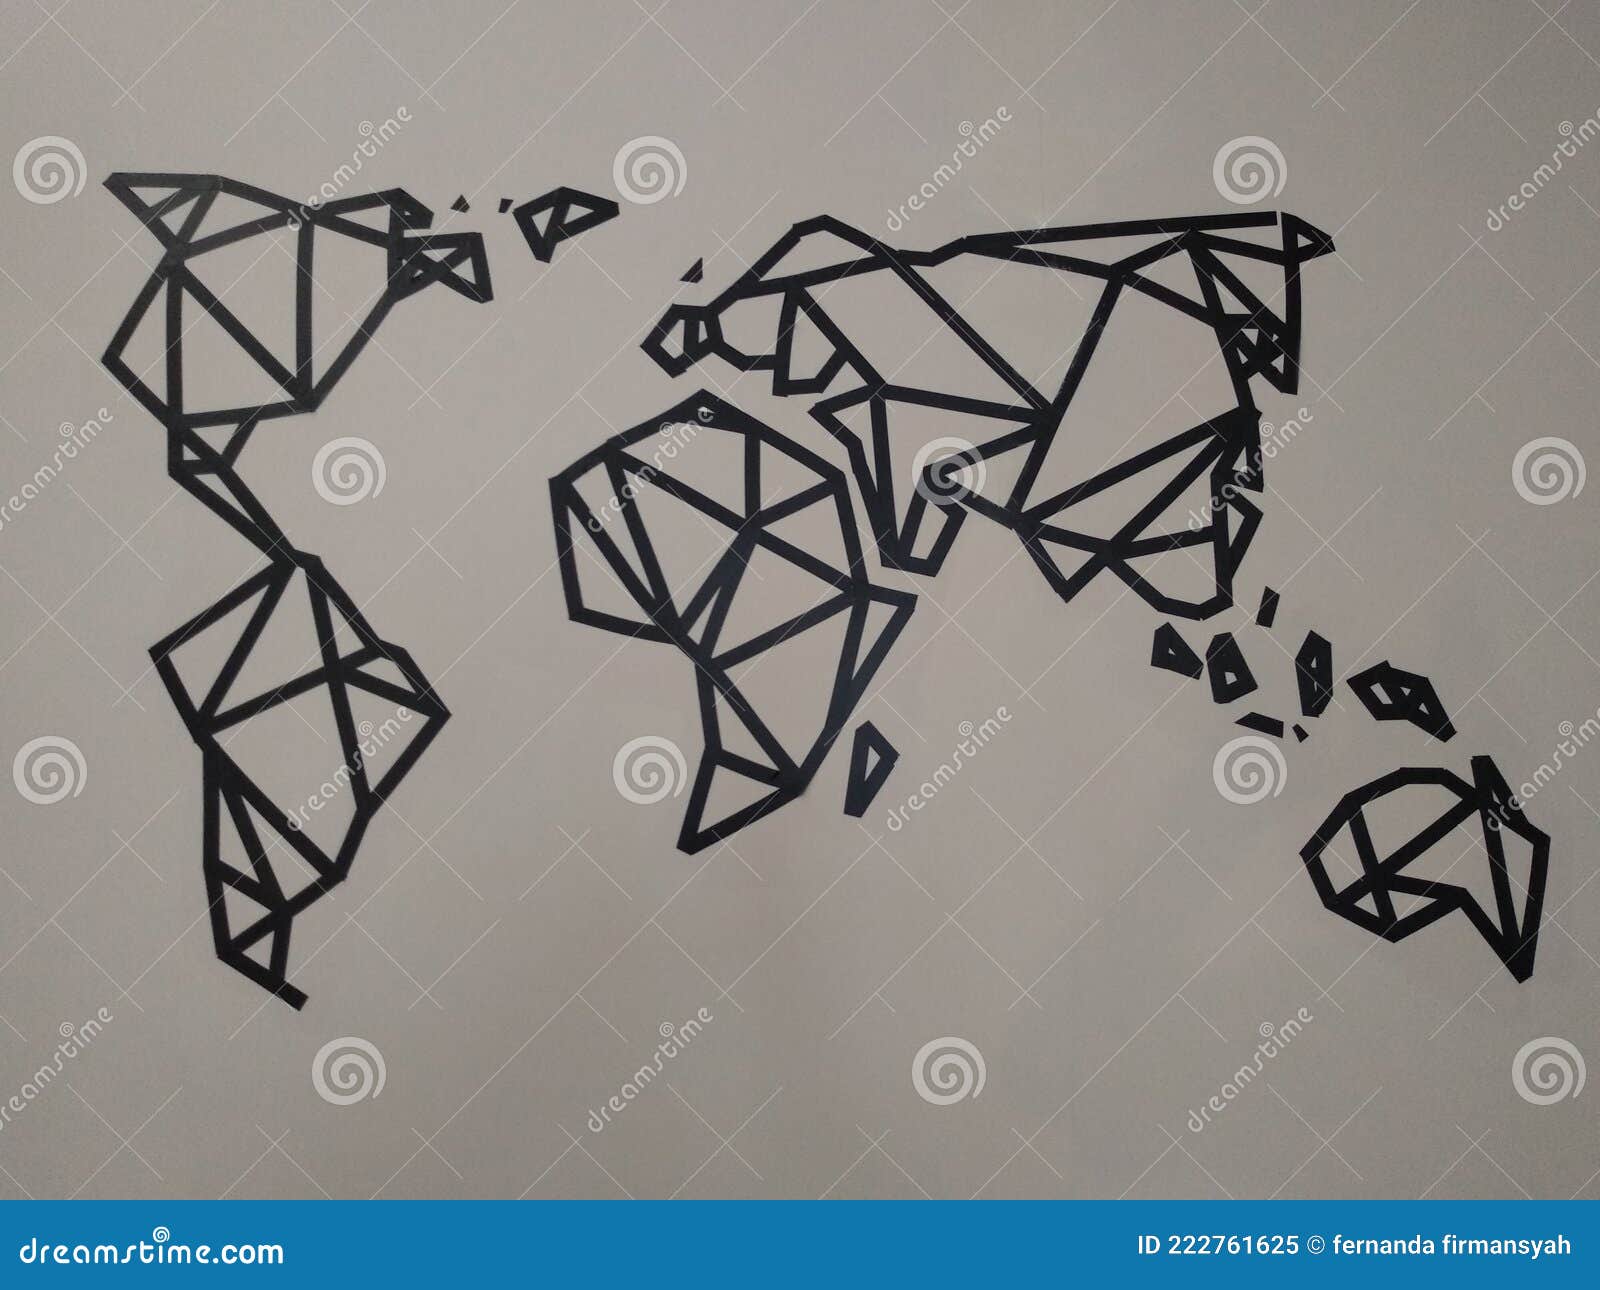 world map handwritting